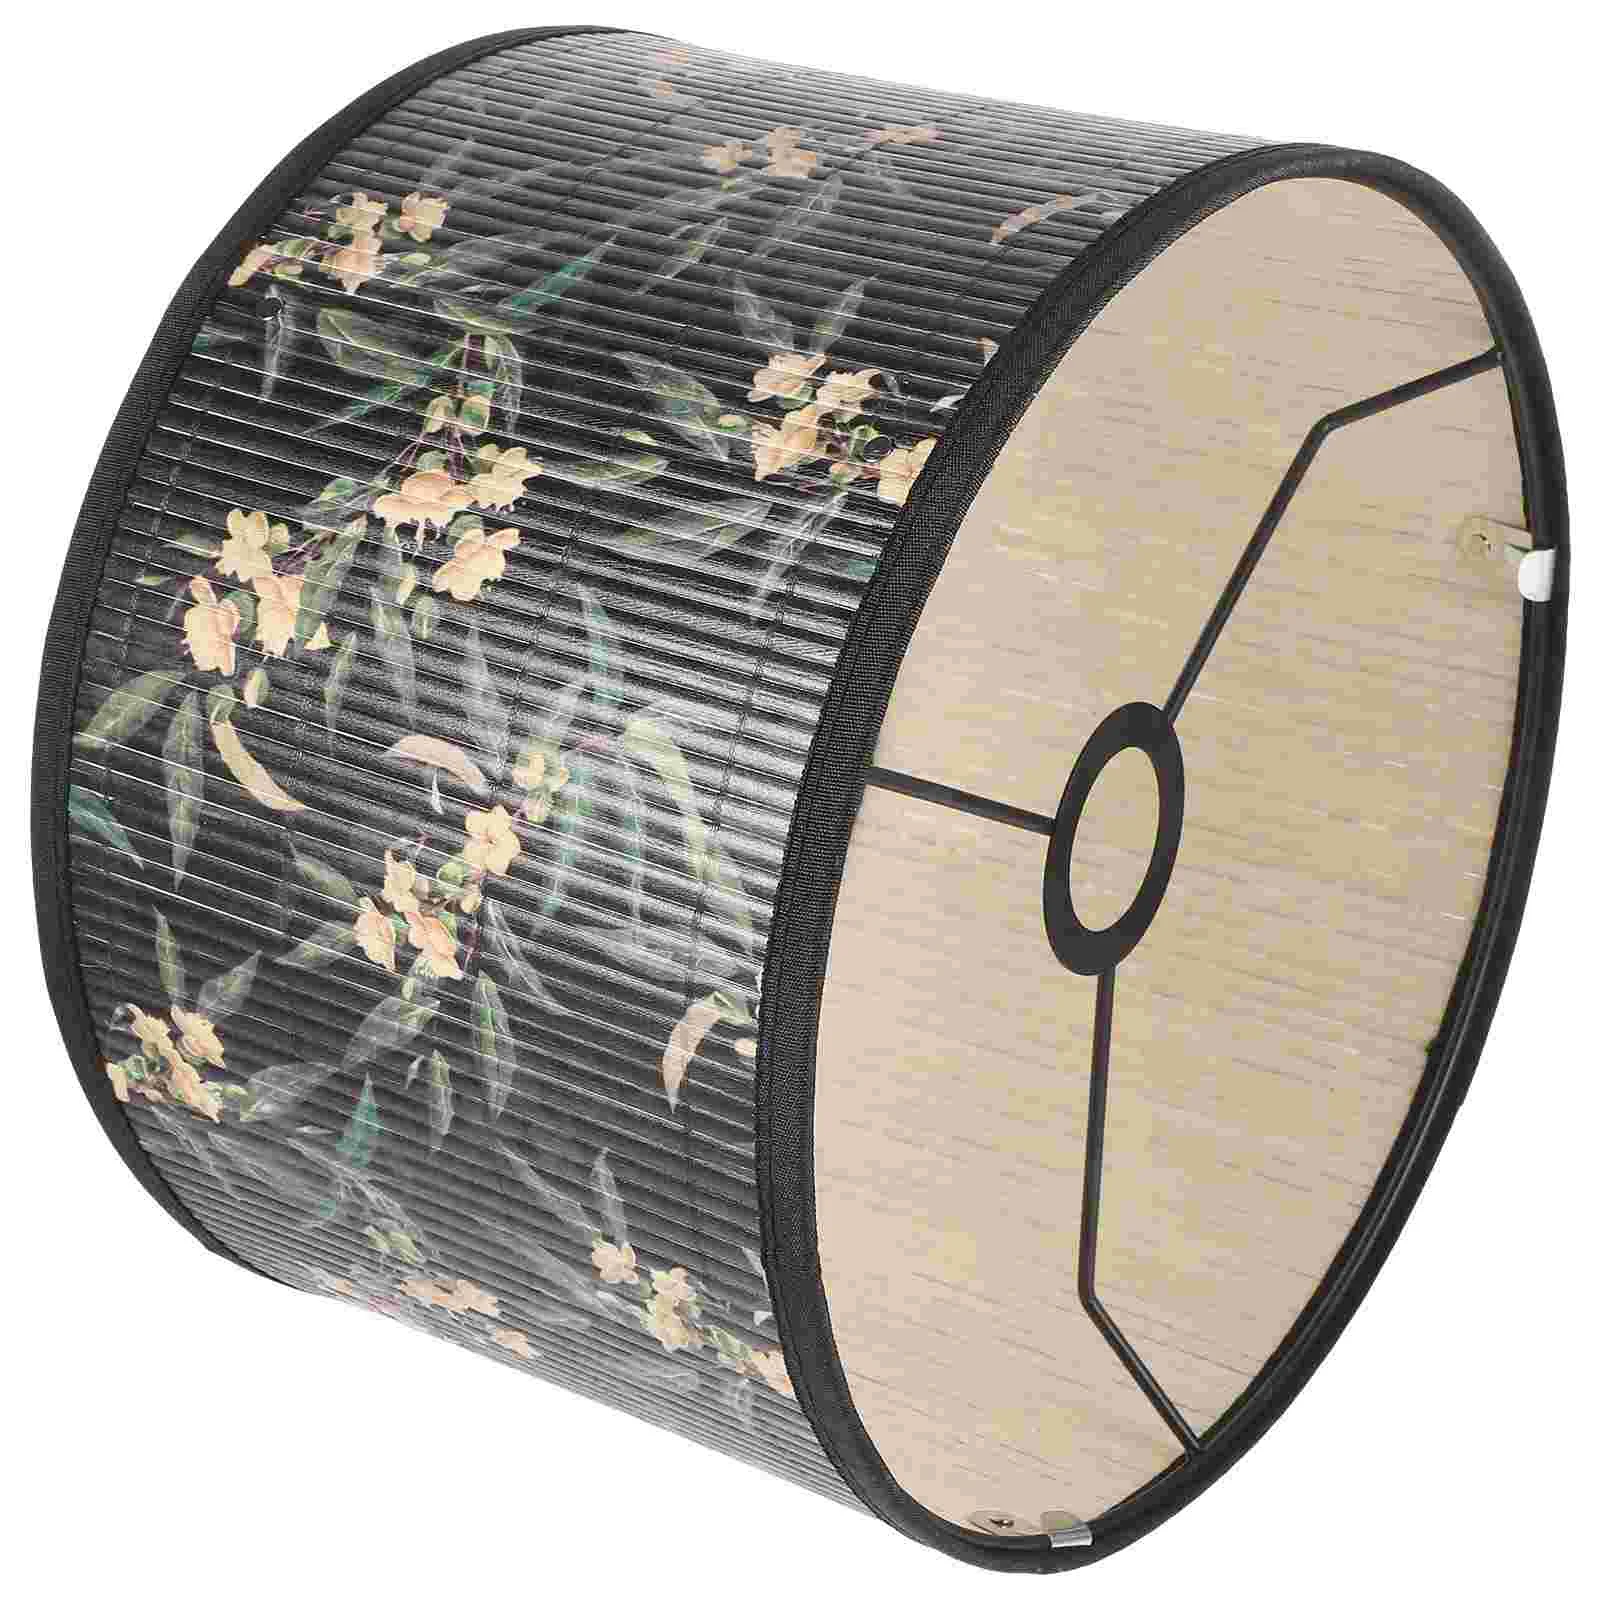 Бамбуковый абажур с цветочным принтом, крышка лампы с винтажной растительной печатью, сменный абажур для лампы - 0